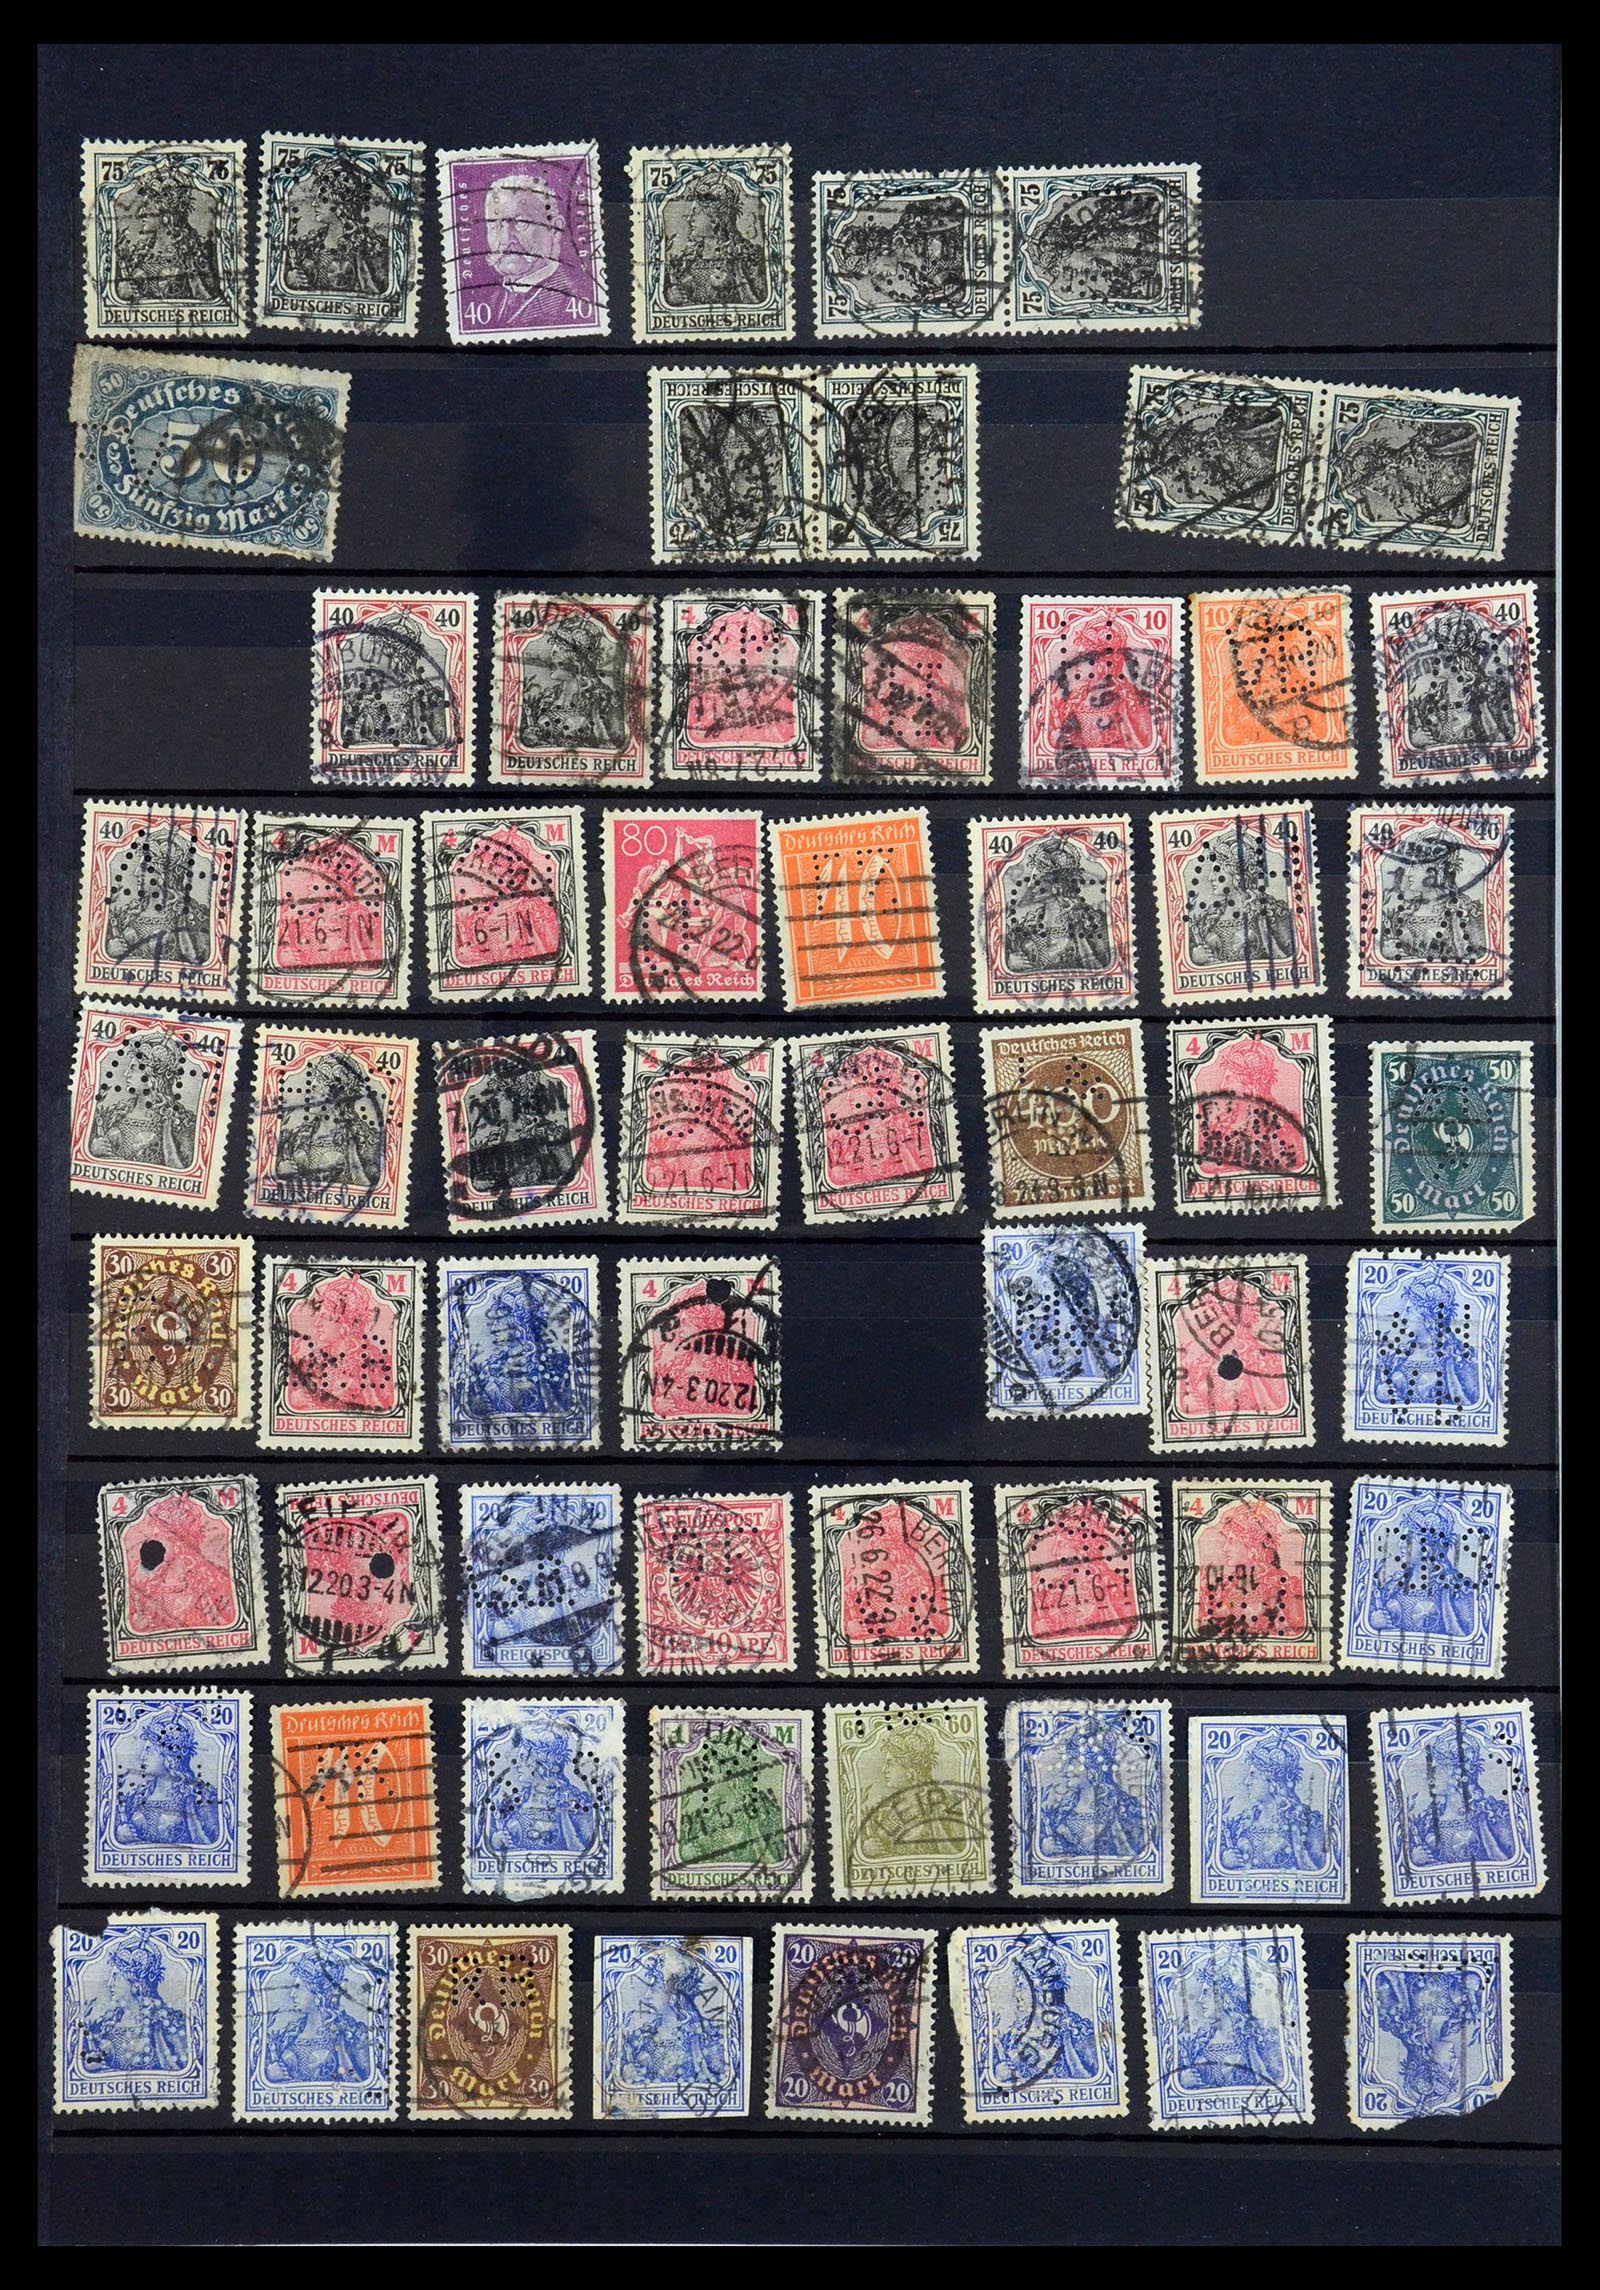 35183 038 - Stamp Collection 35183 German Reich perfins 1880-1945.